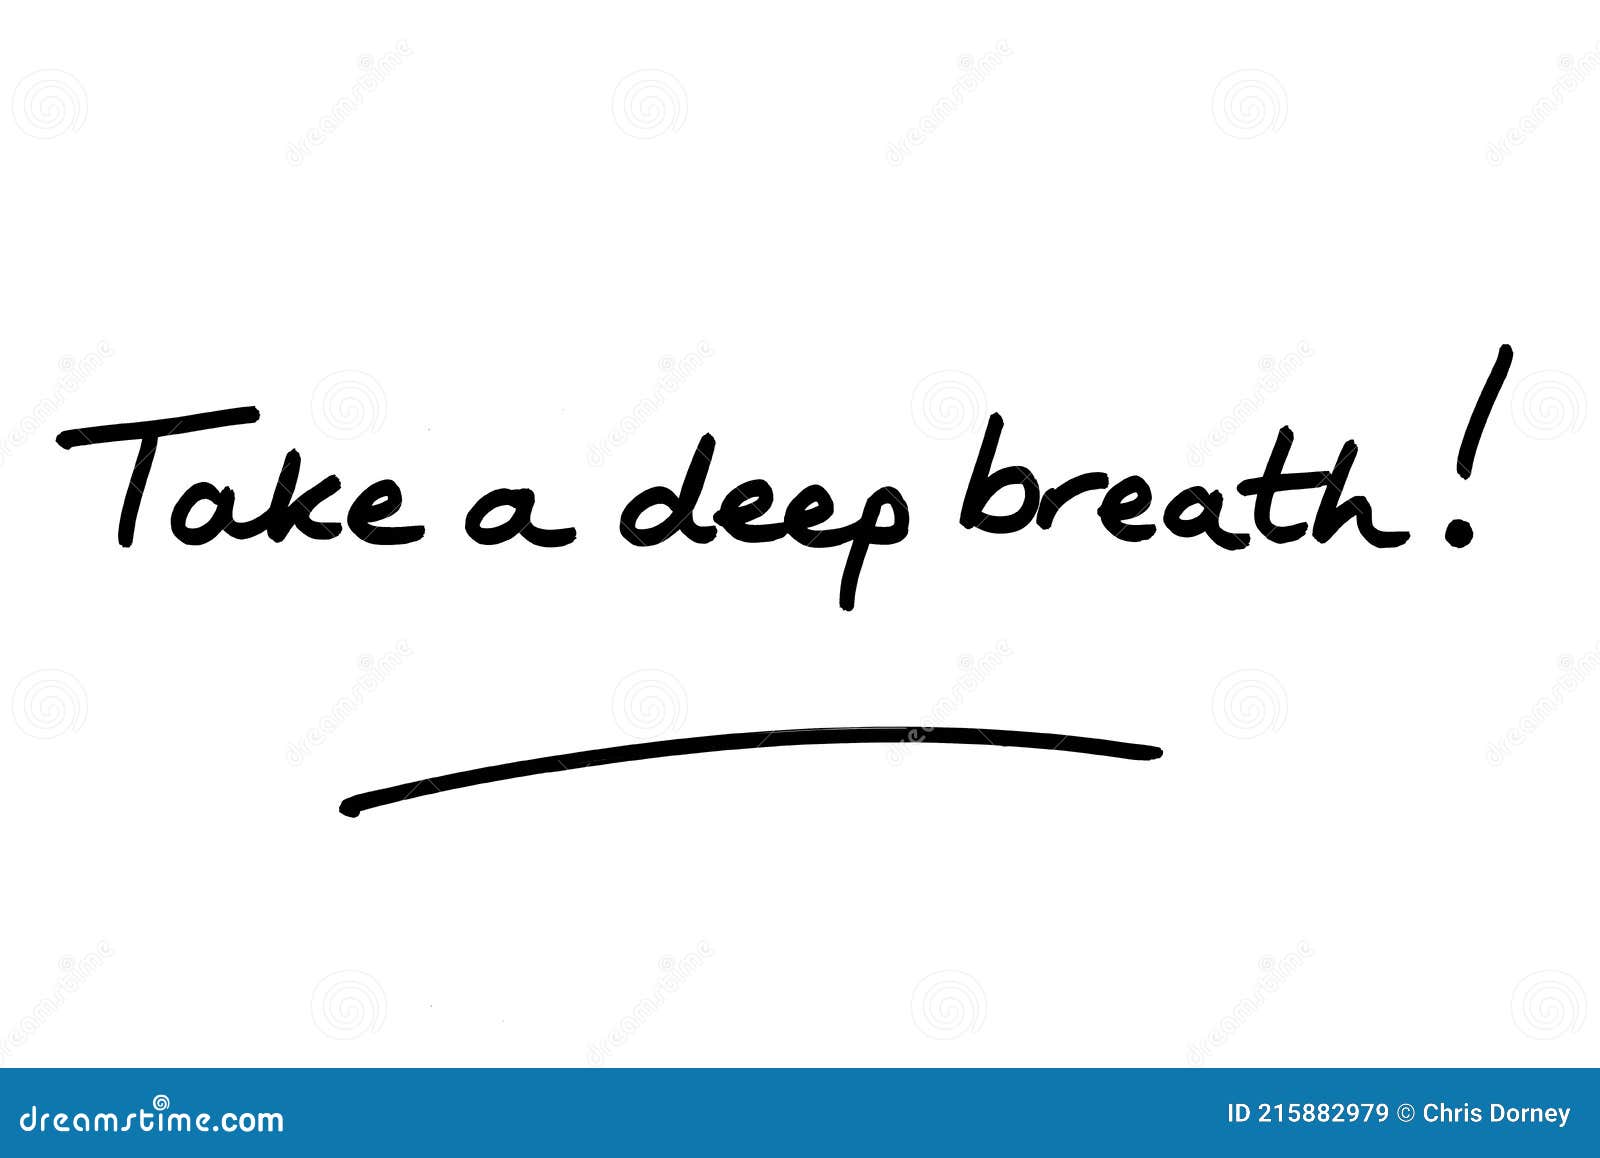 deep breath clipart